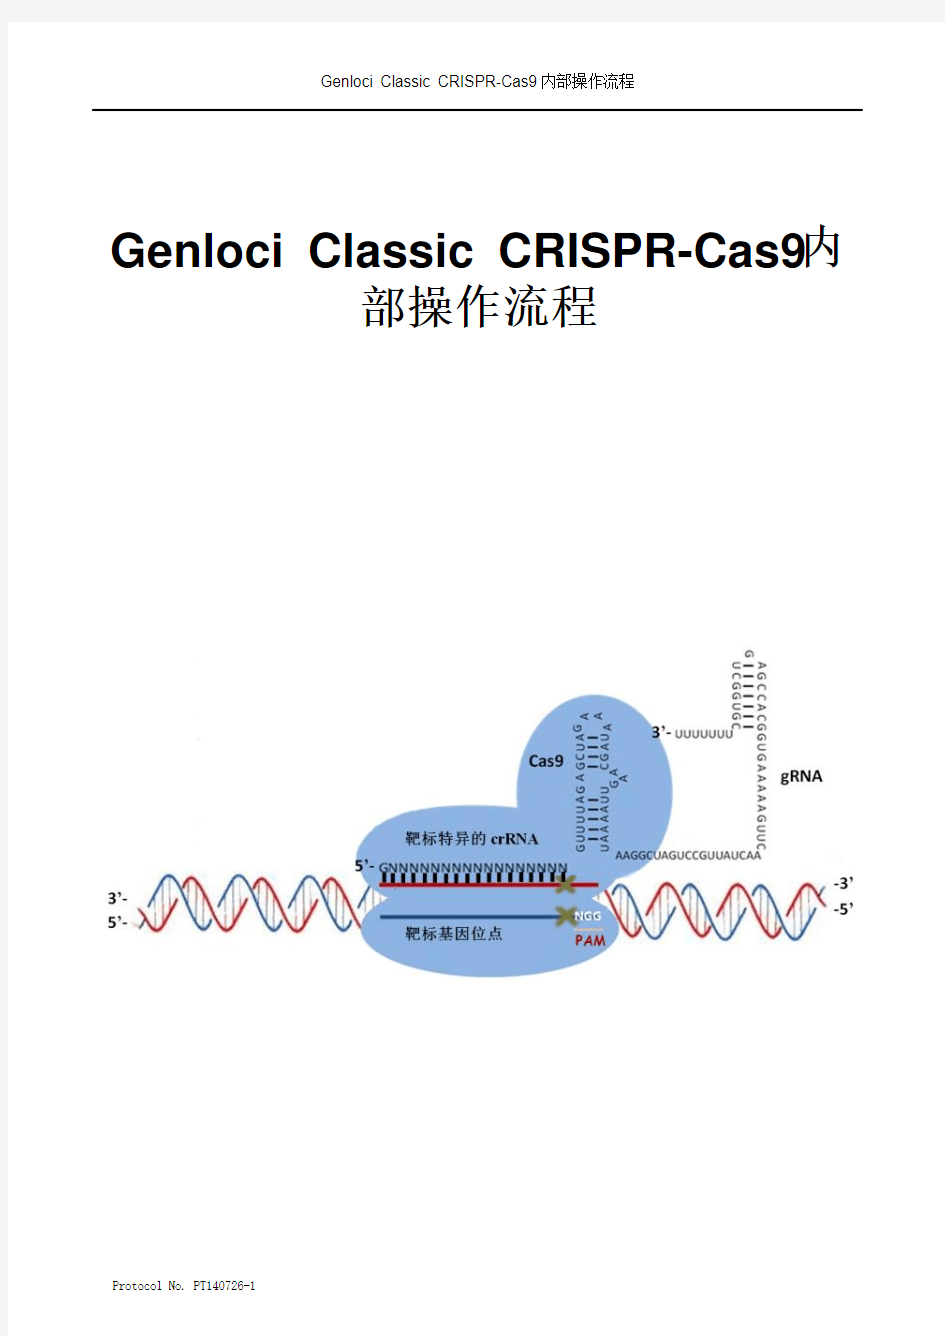 某公司泄密的CRISPR-Cas9内部操作流程